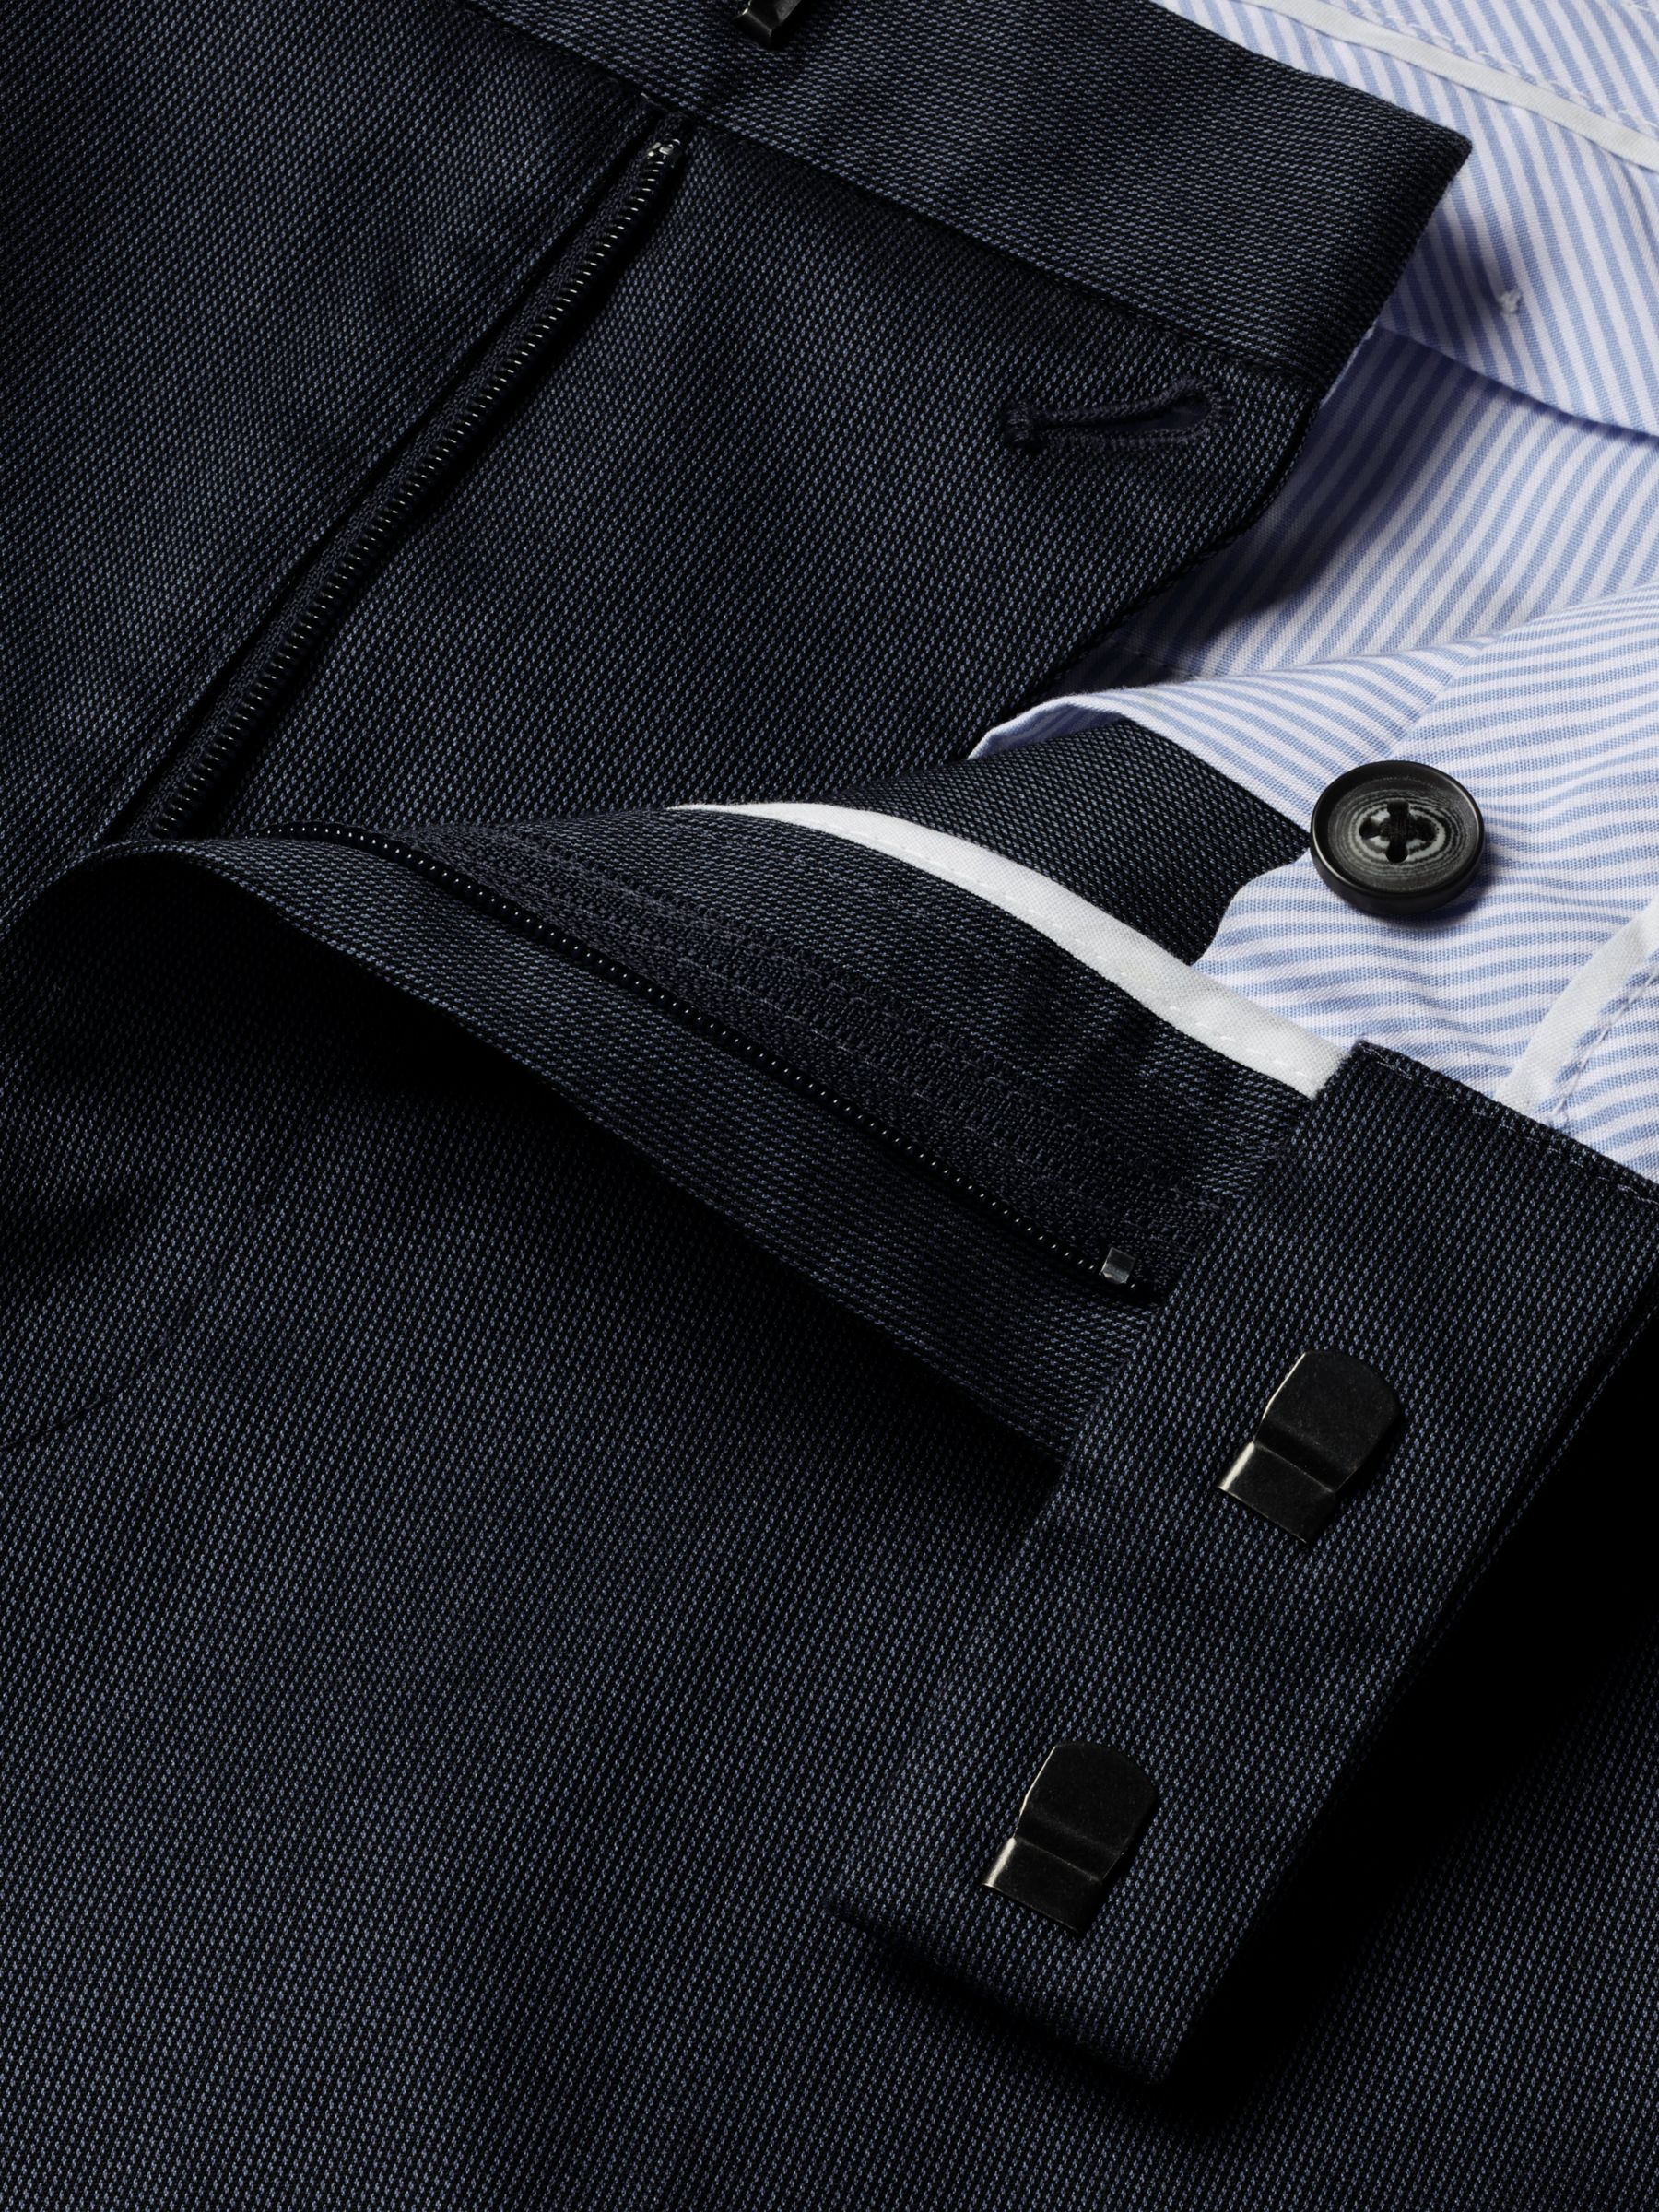 Charles Tyrwhitt Smart Texture Classic Fit Trousers, Denim Blue, W38/L32